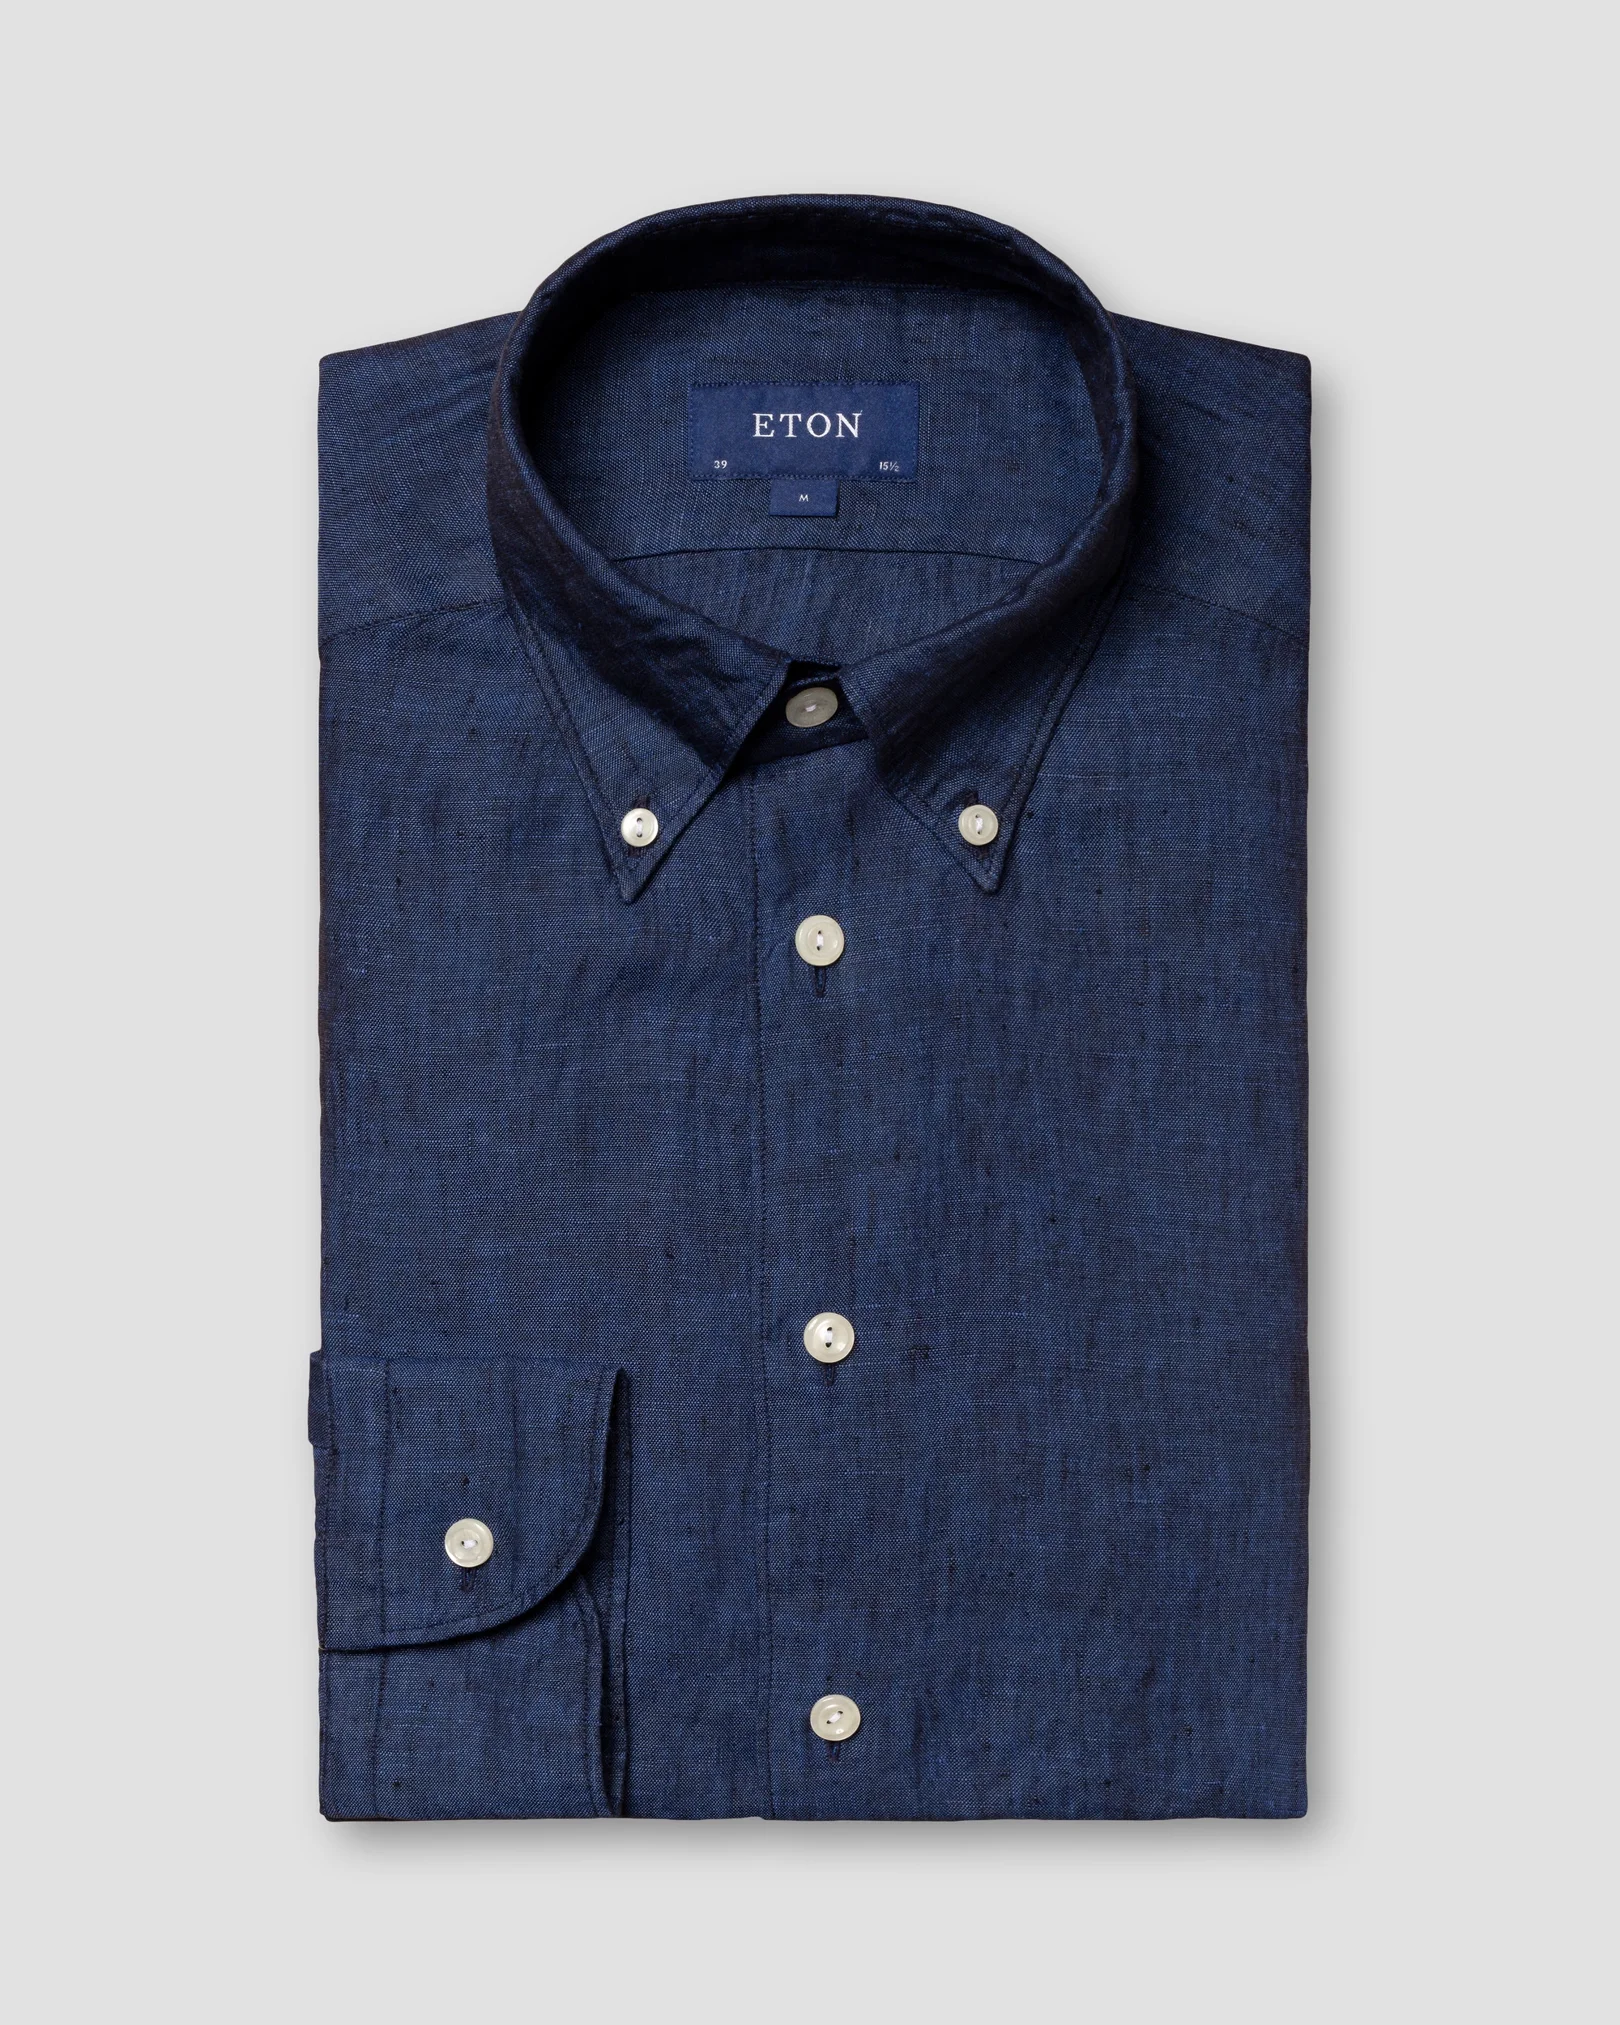 Eton - blue linen shirt button down collar